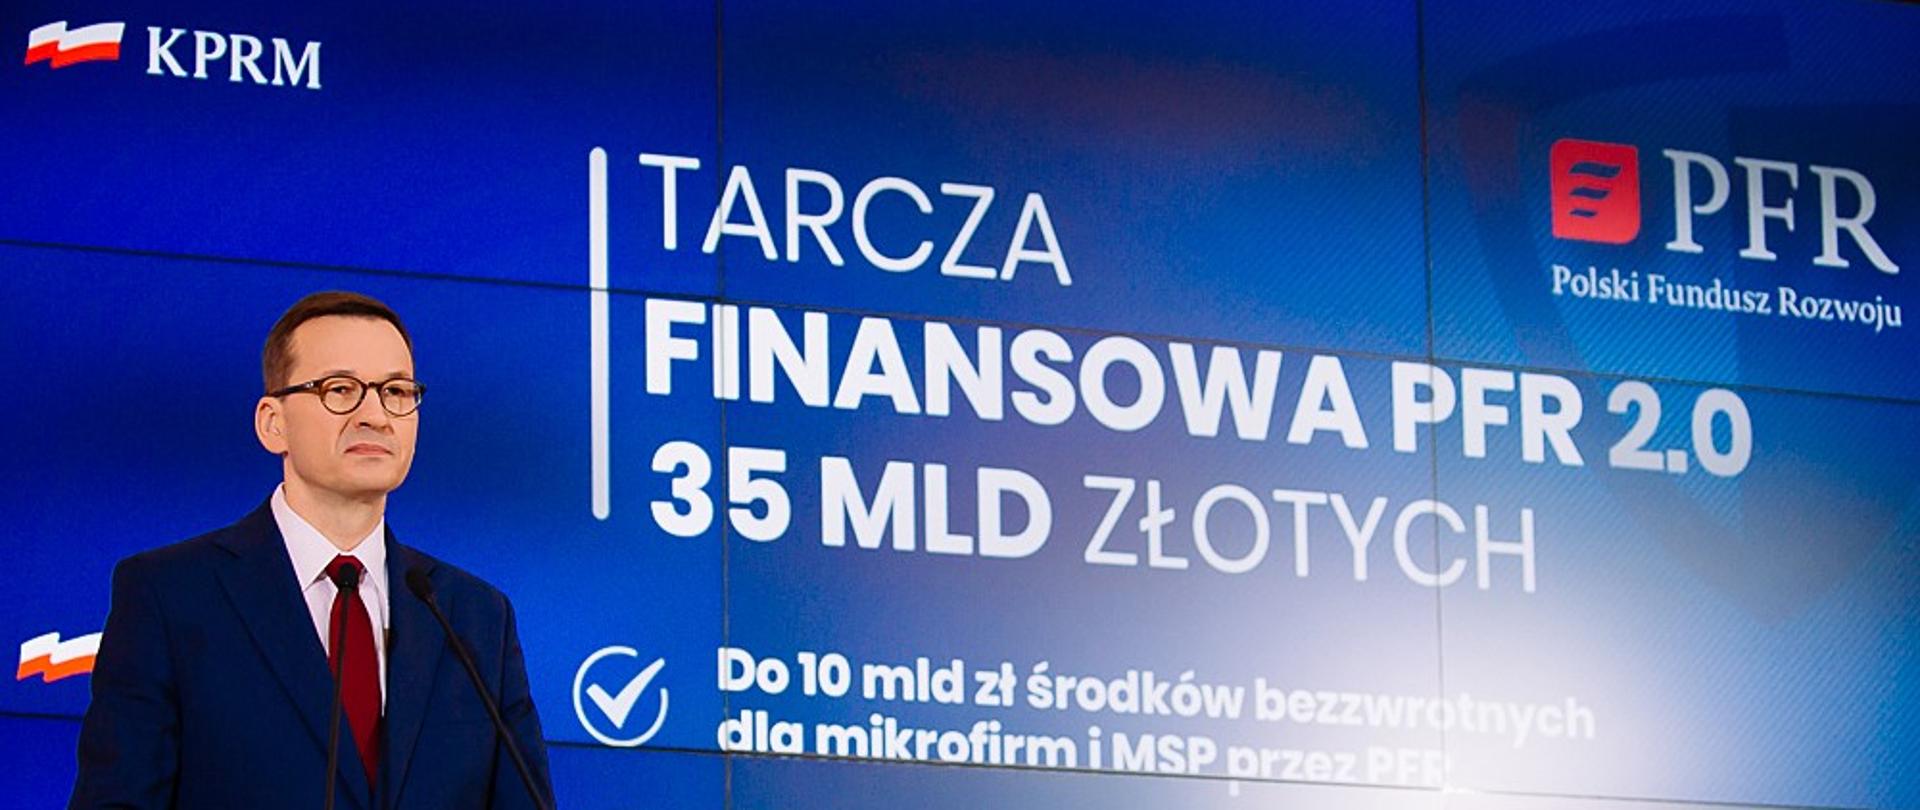 Premier Mateusz Morawiecki stoi przy mównicy, w tle prezentacja na ekranie.